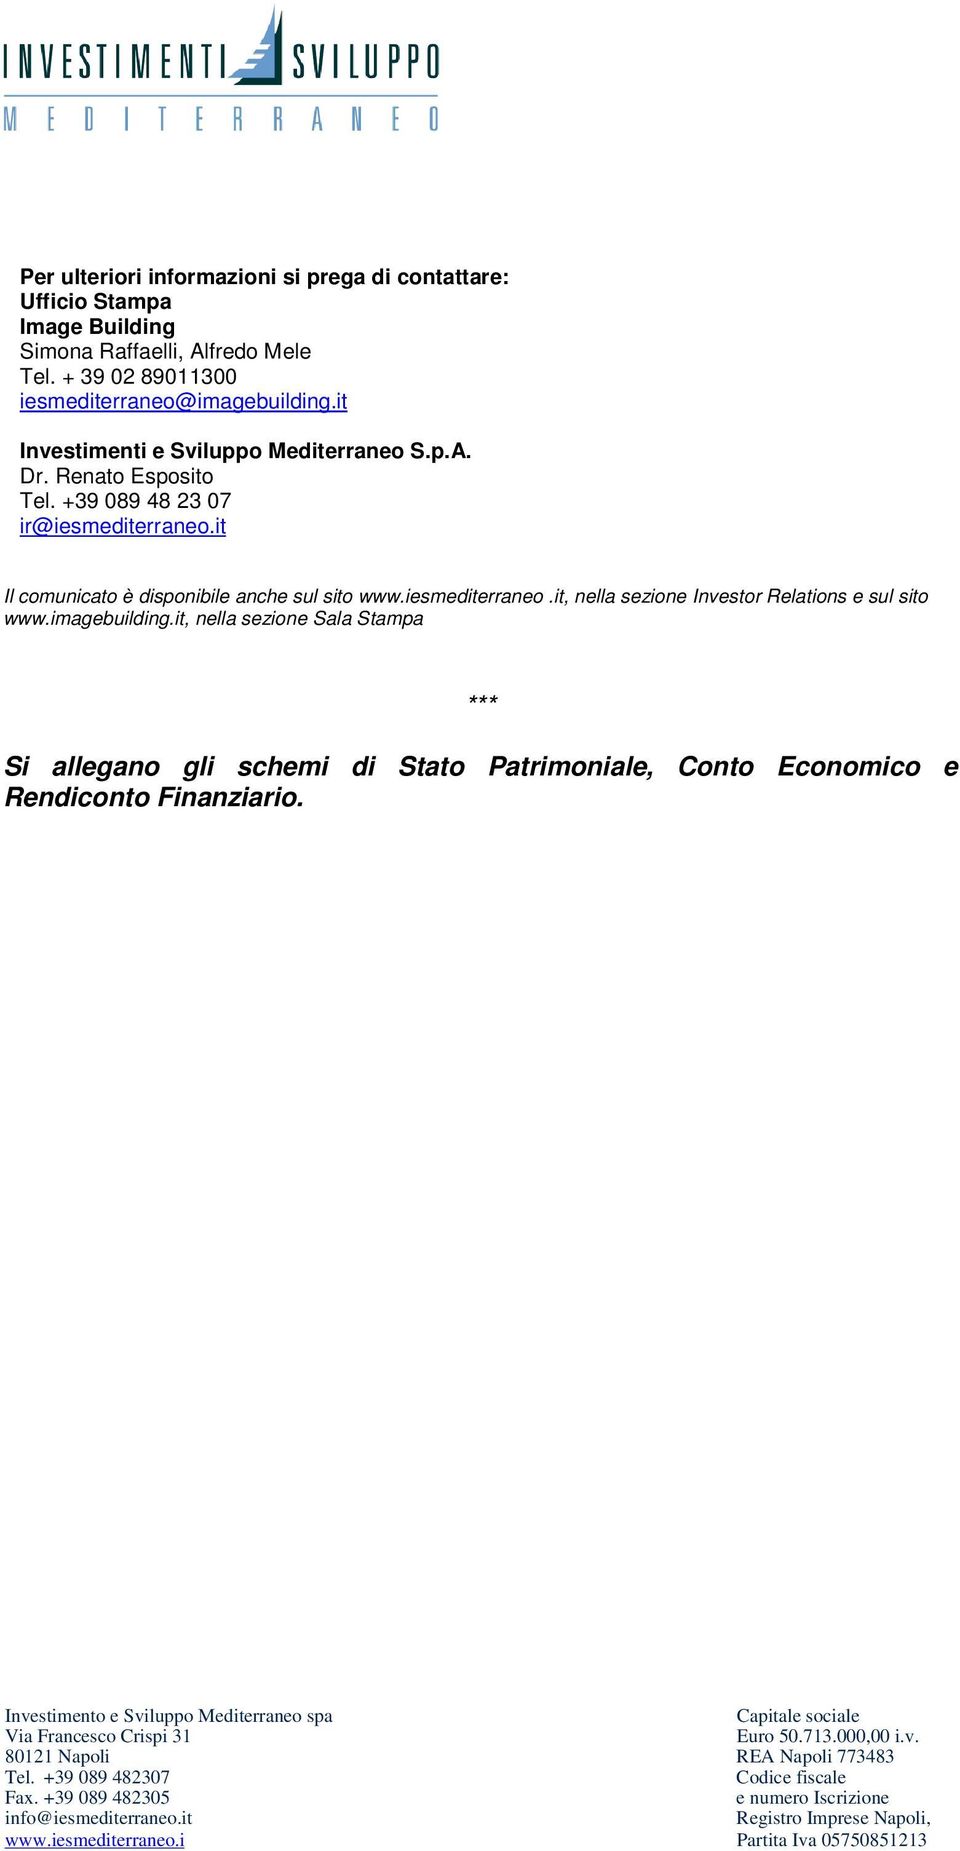 +39 089 48 23 07 ir@iesmediterraneo.it Il comunicato è disponibile anche sul sito www.iesmediterraneo.it, nella sezione Investor Relations e sul sito www.